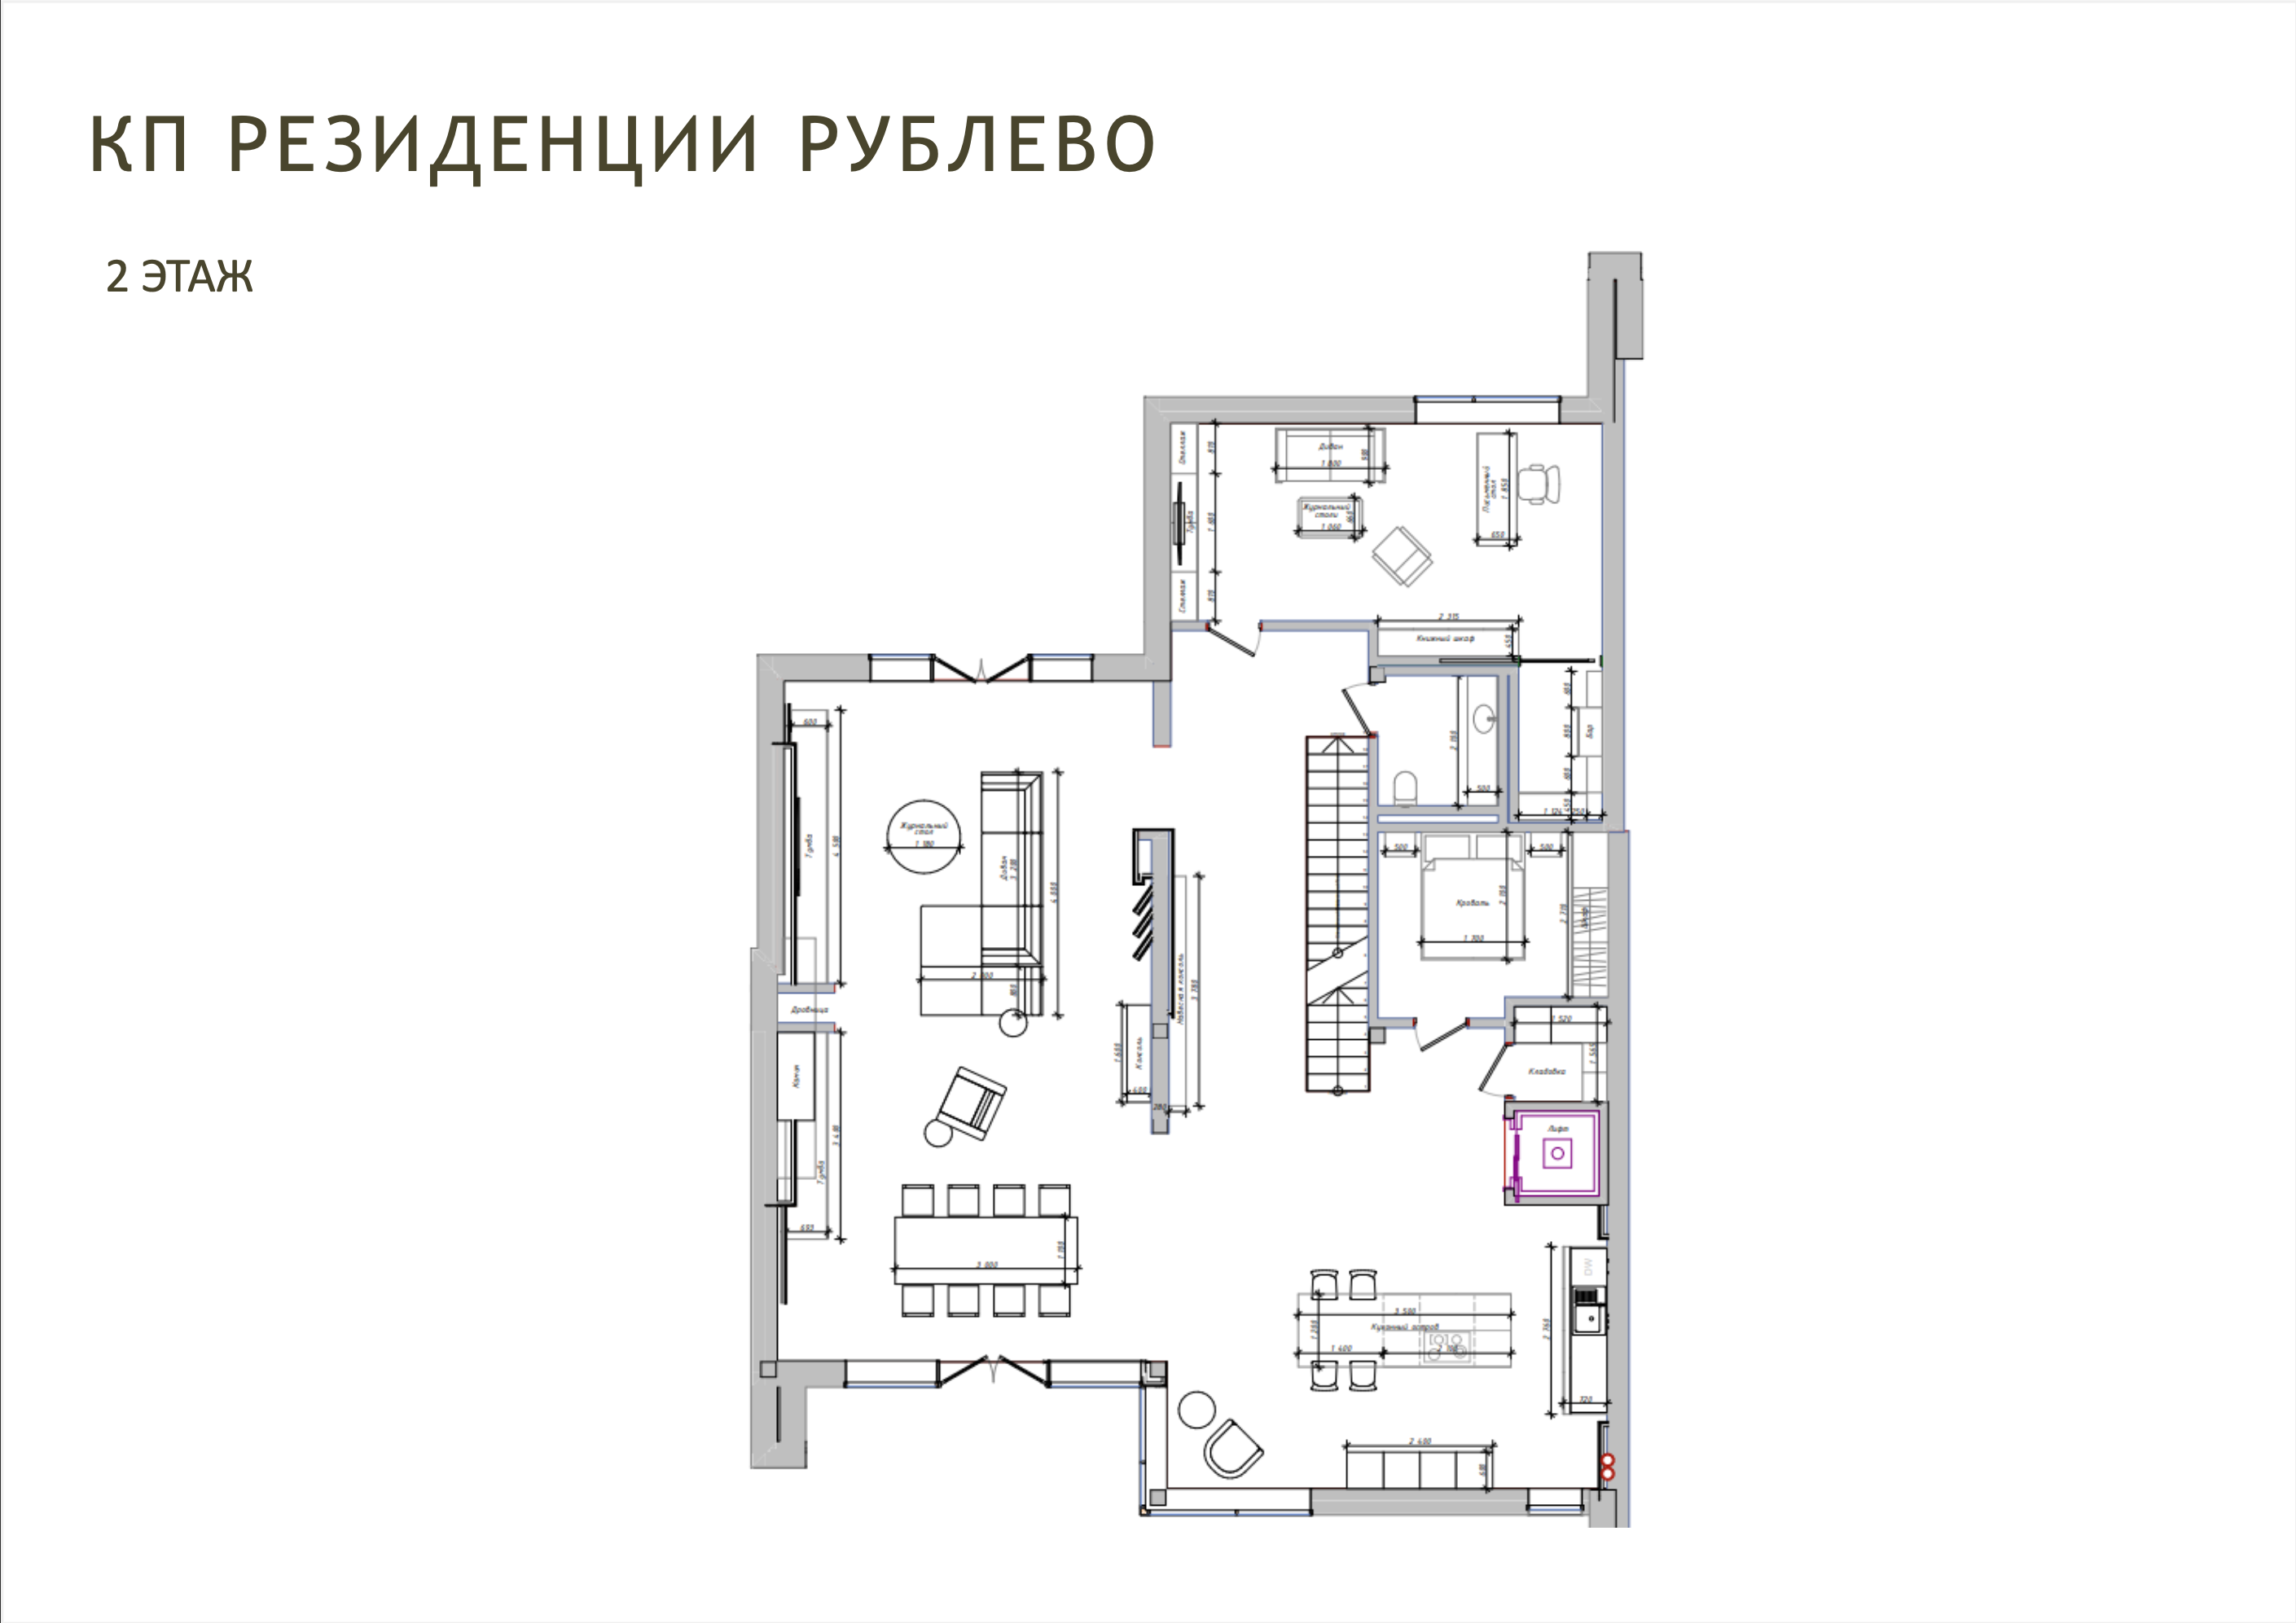 Планировка Дуплекс с 4 спальнями 483 м2 в посёлке Резиденция Рублево Фото 2